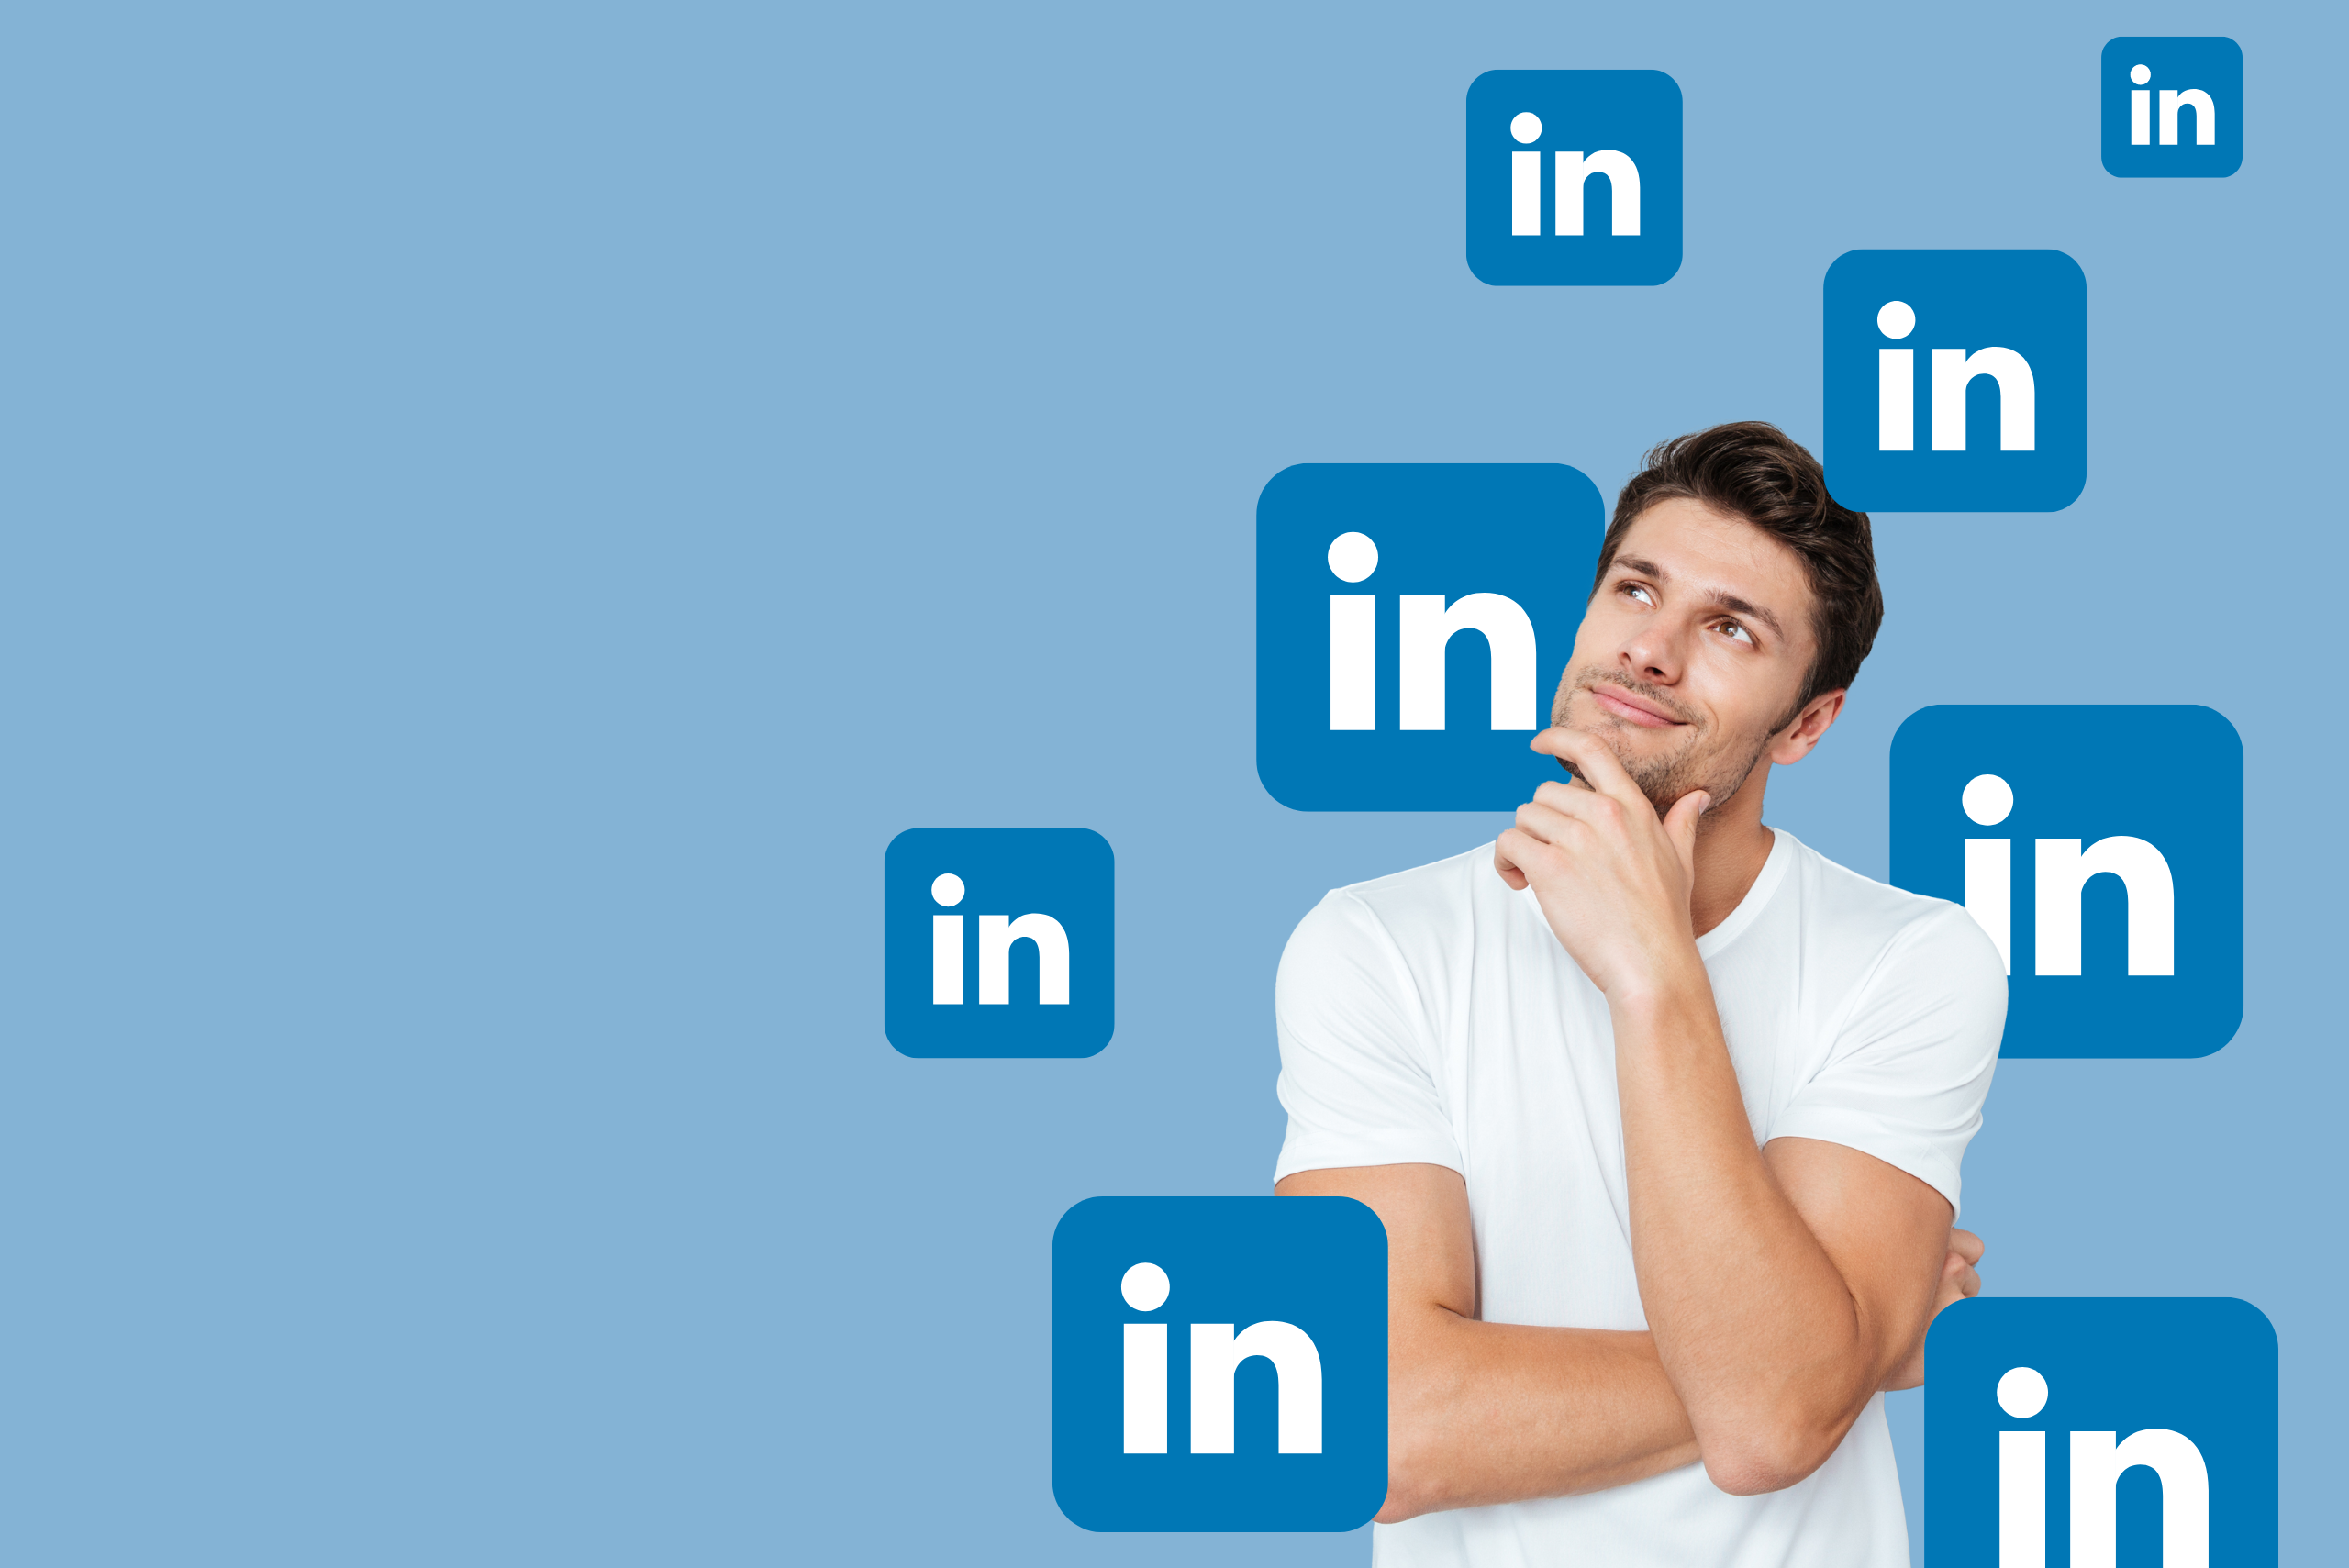 Co powinien zawierać profesjonalny profil na LinkedInie?